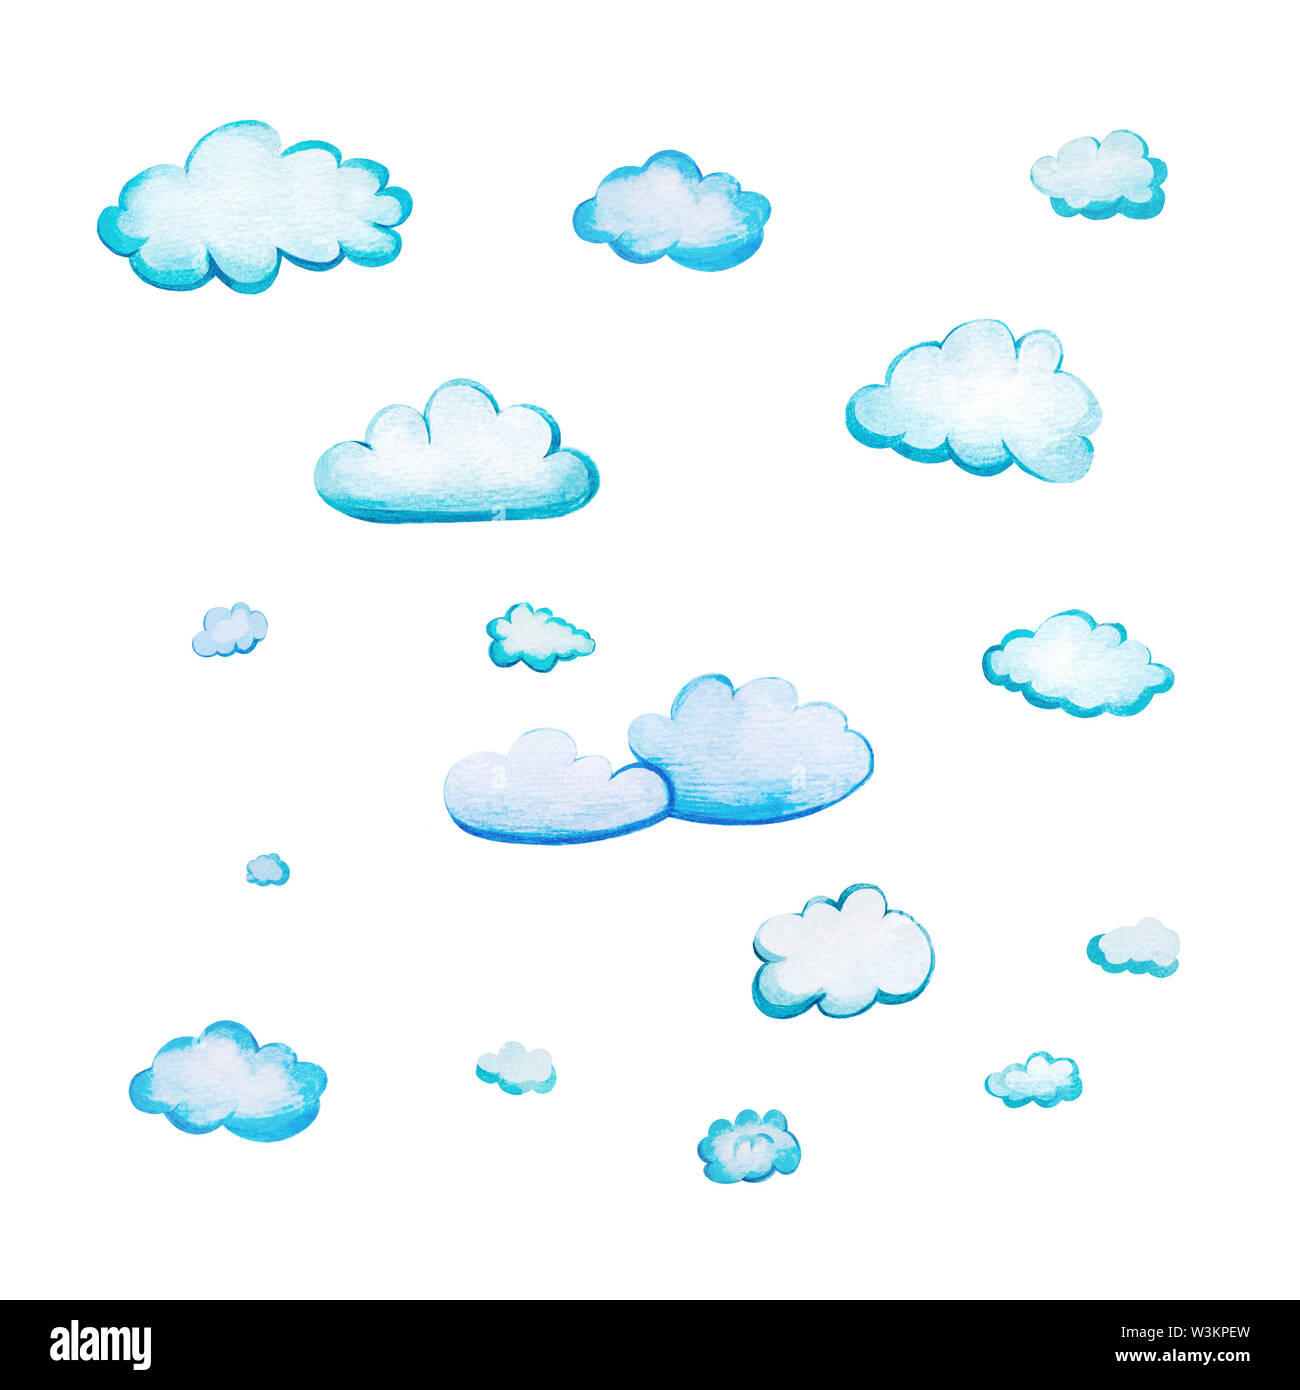 Impostare con acquarello cartoon nuvole. Diciassette bianco-blu di nuvole disegnate a mano e isolate su uno sfondo bianco. Morbidi forme arrotondate con wate Foto Stock